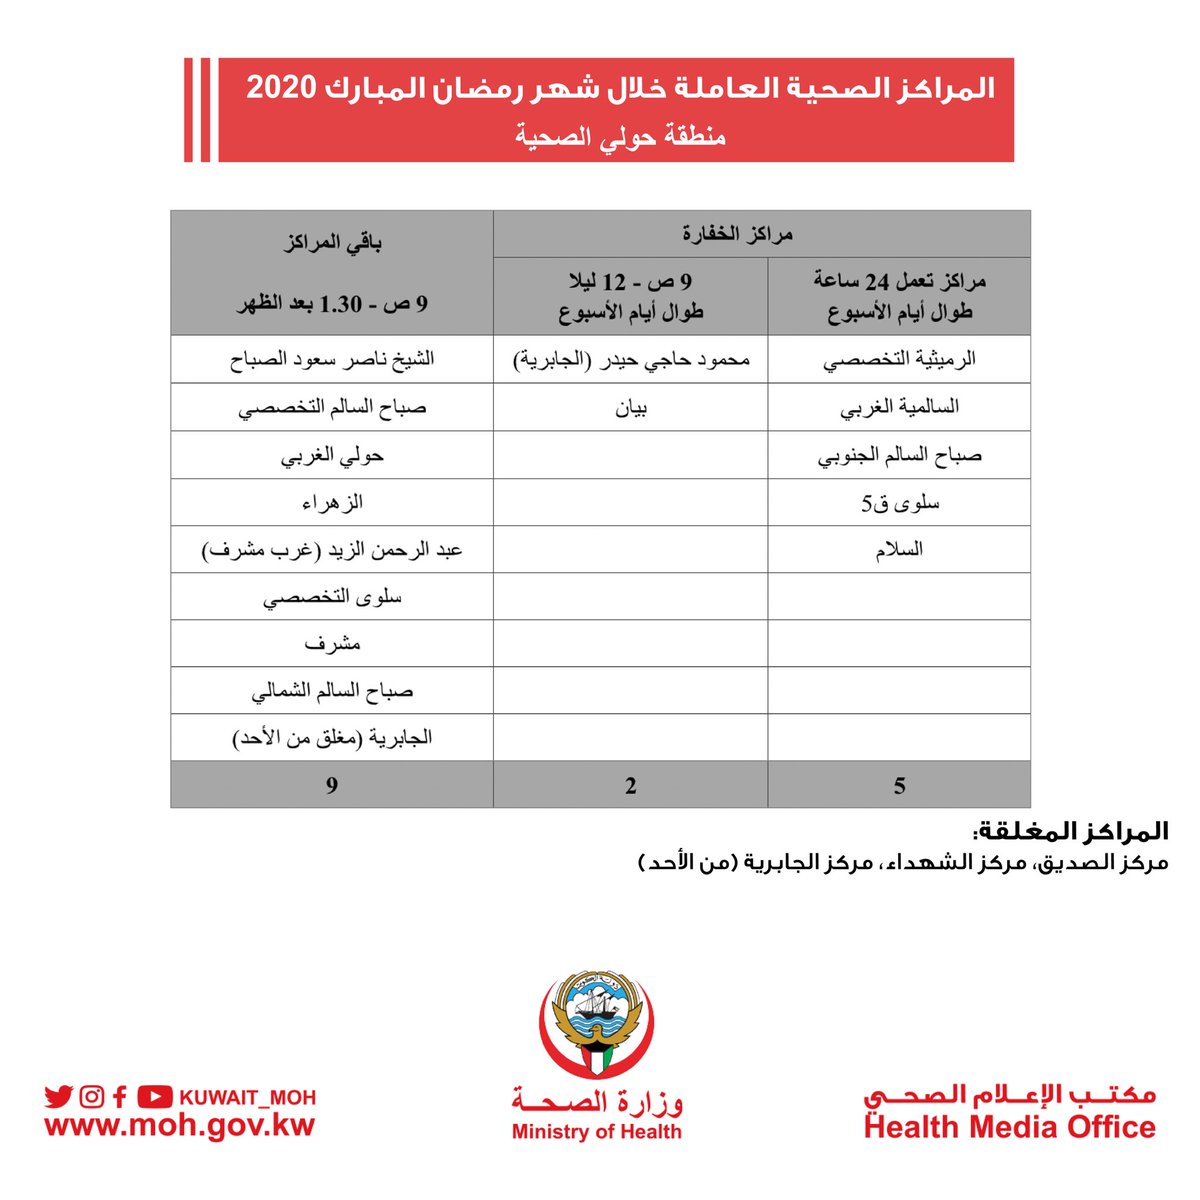 وزارة الصحة الكويت On Twitter المراكز الصحية العاملة خلال شهر رمضان المبارك 2020